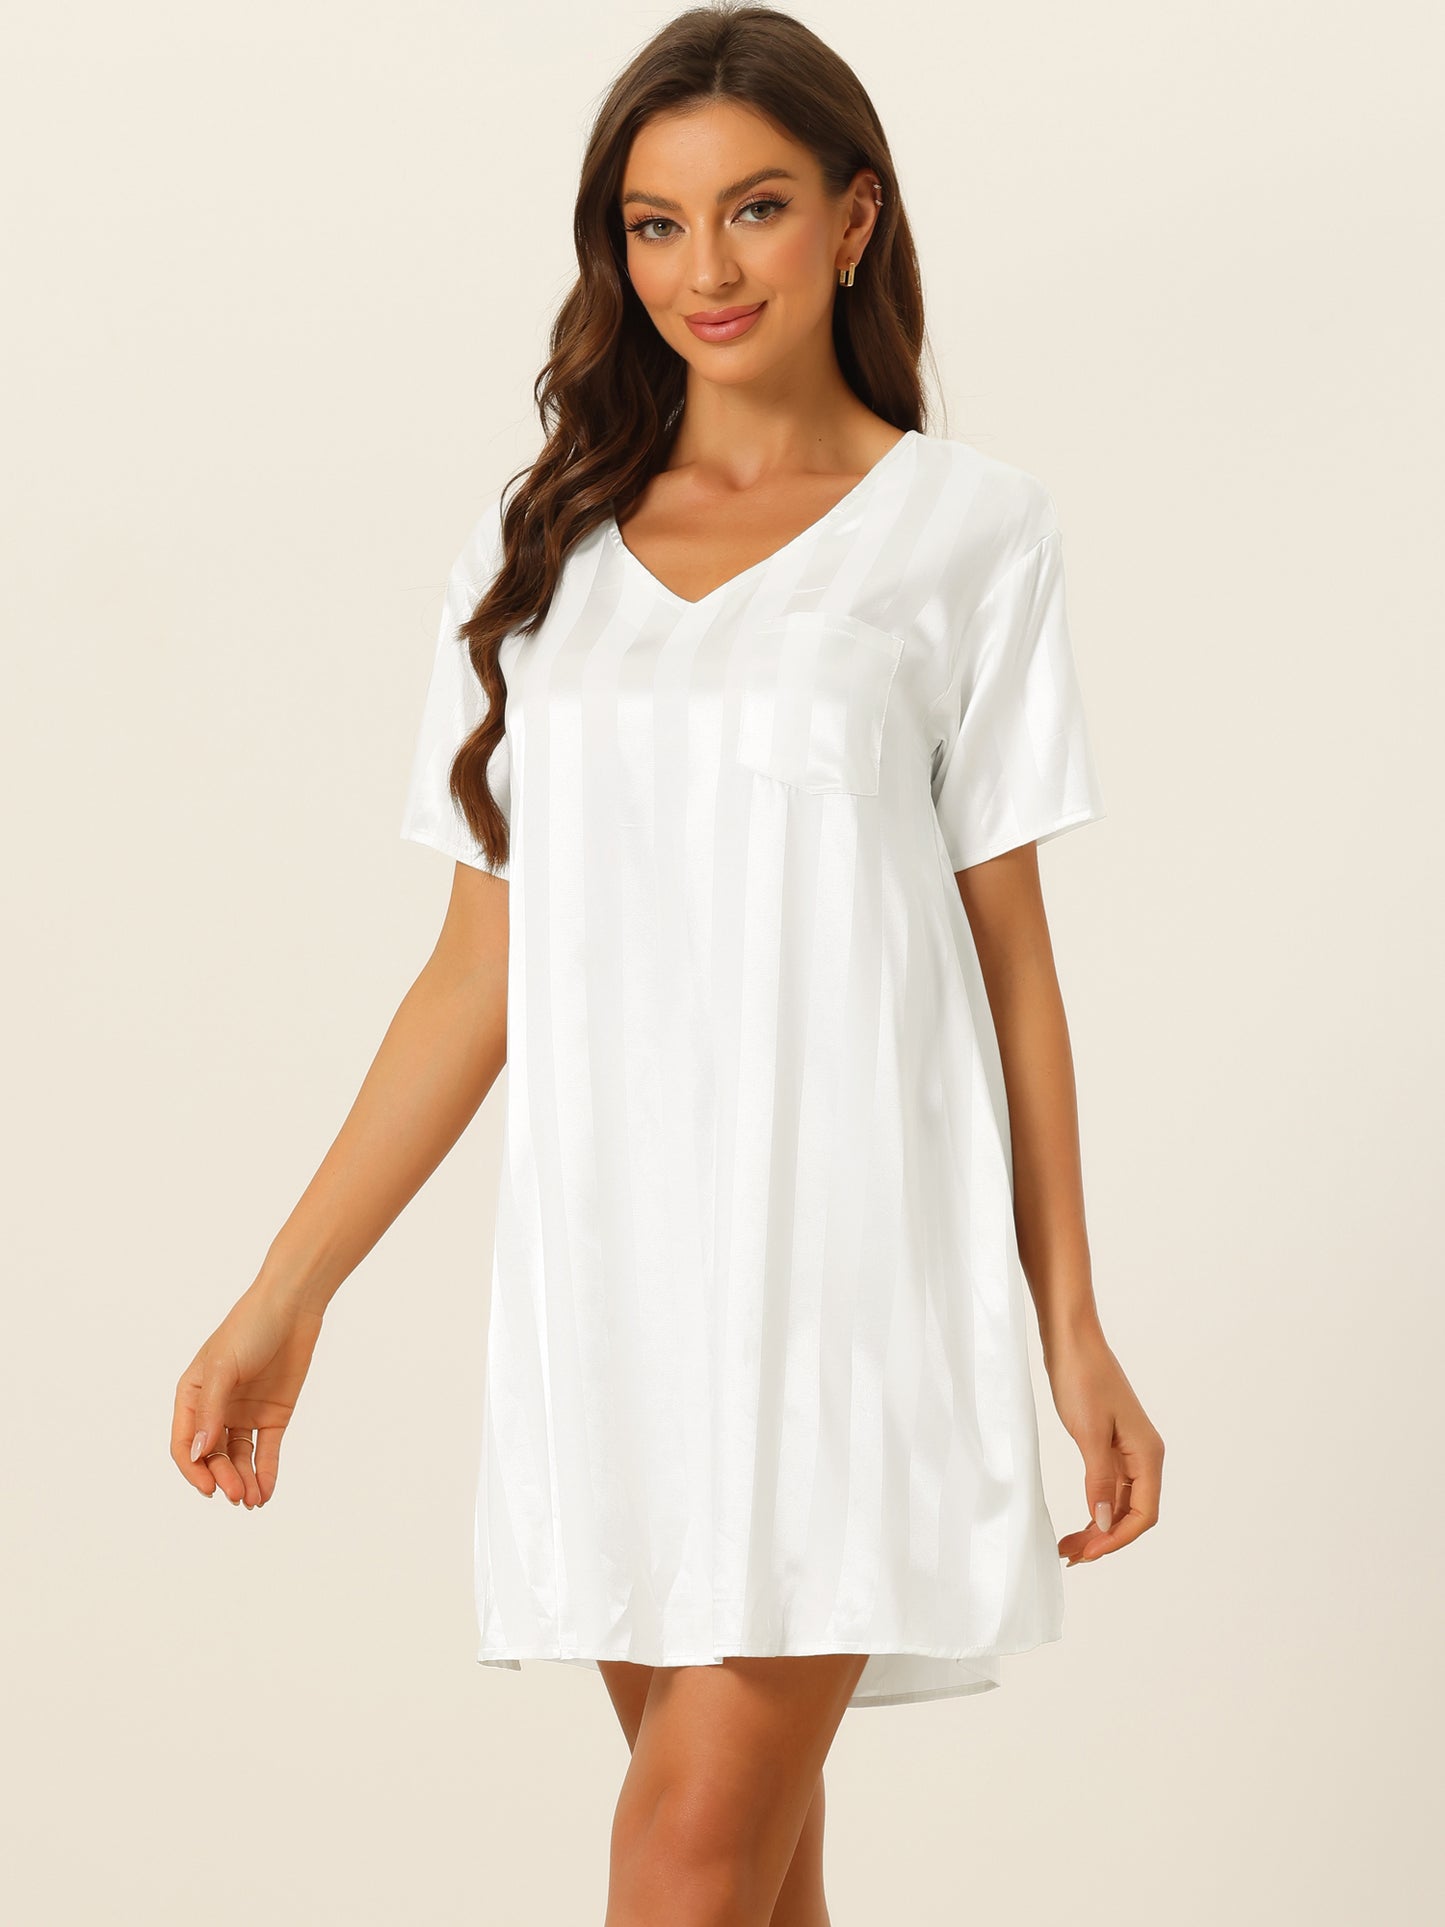 cheibear Pajamas Satin Dress Nightshirt Short Sleeves Lounge Sleepwear Nightgown White